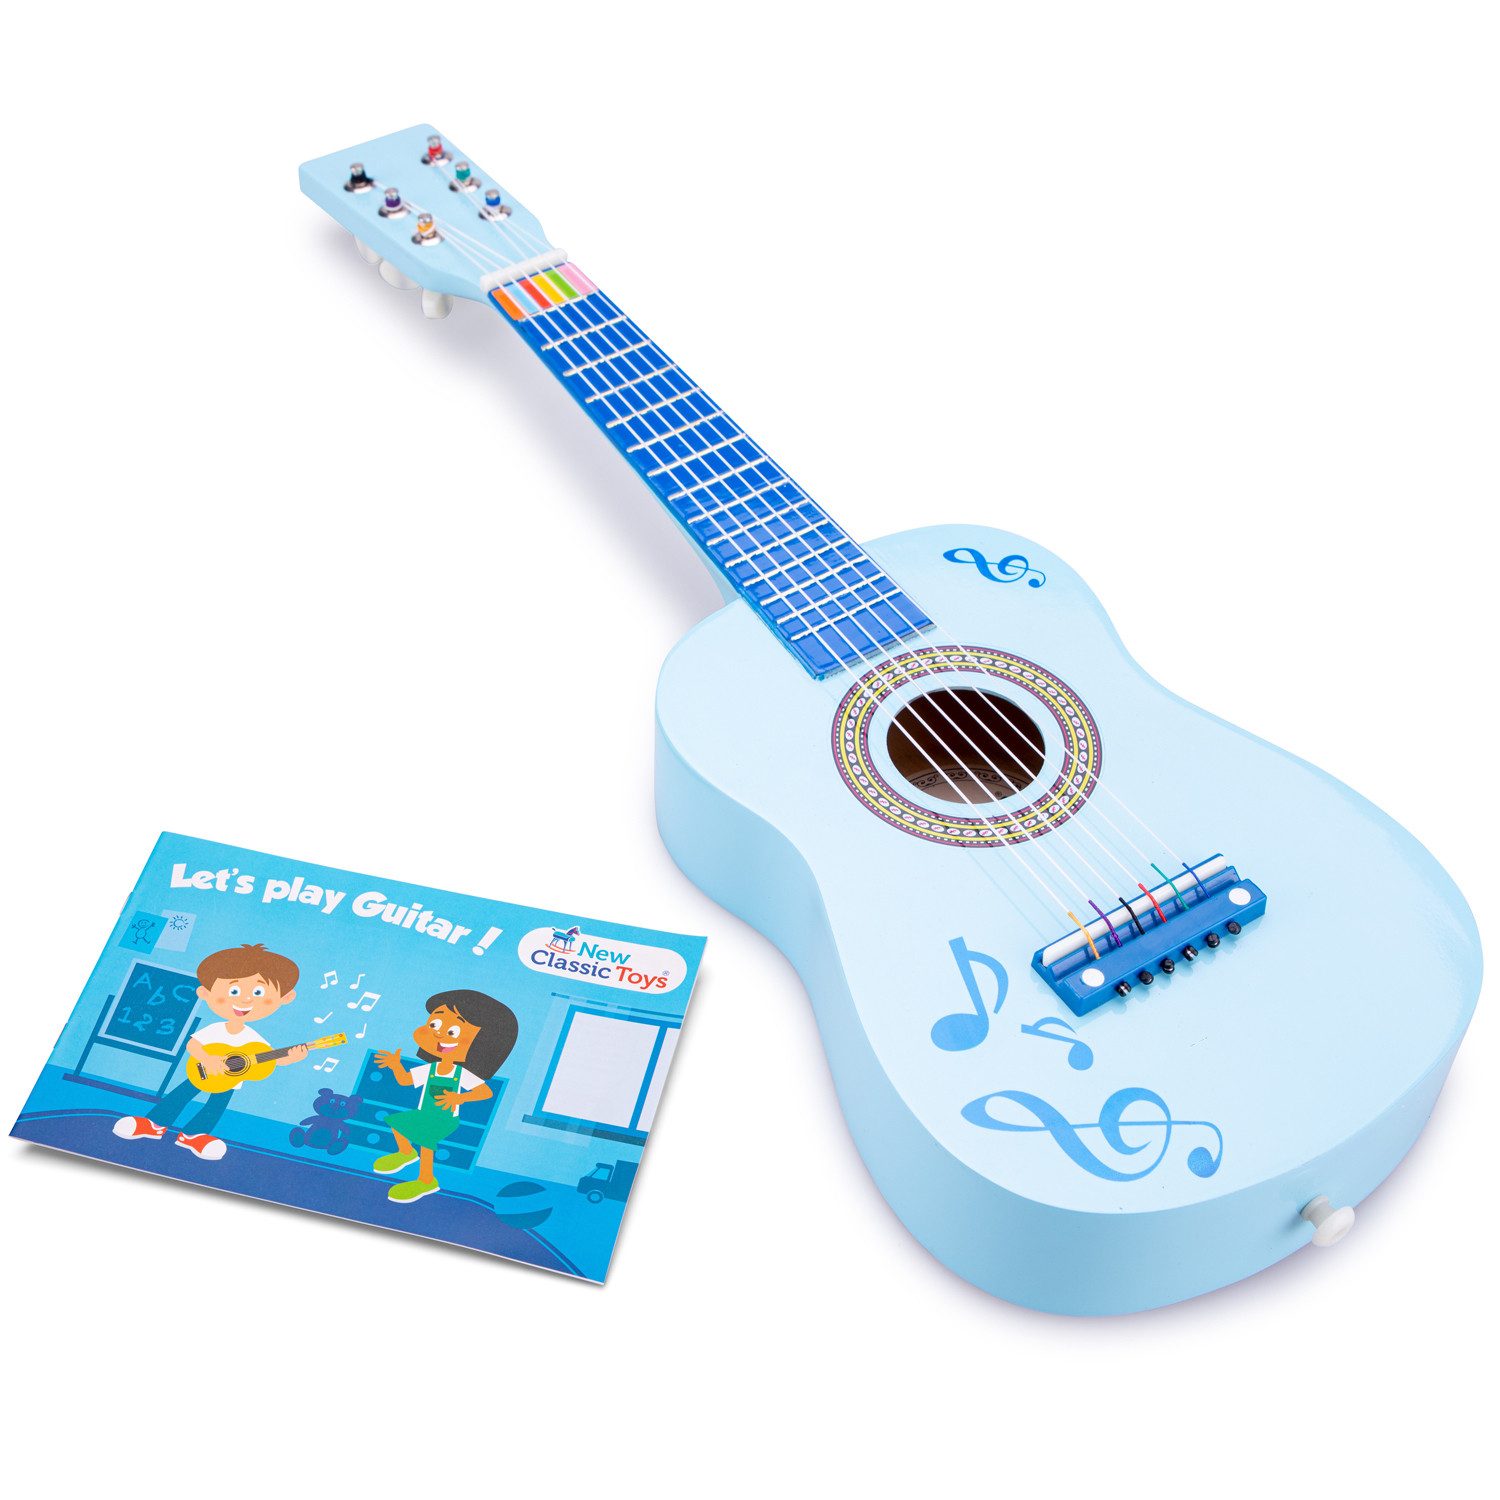 New Classic Toys® Spielzeug-Musikinstrument Gitarre blau mit Noten Kindergitarre Kinder-Instrument Musikspielzeug